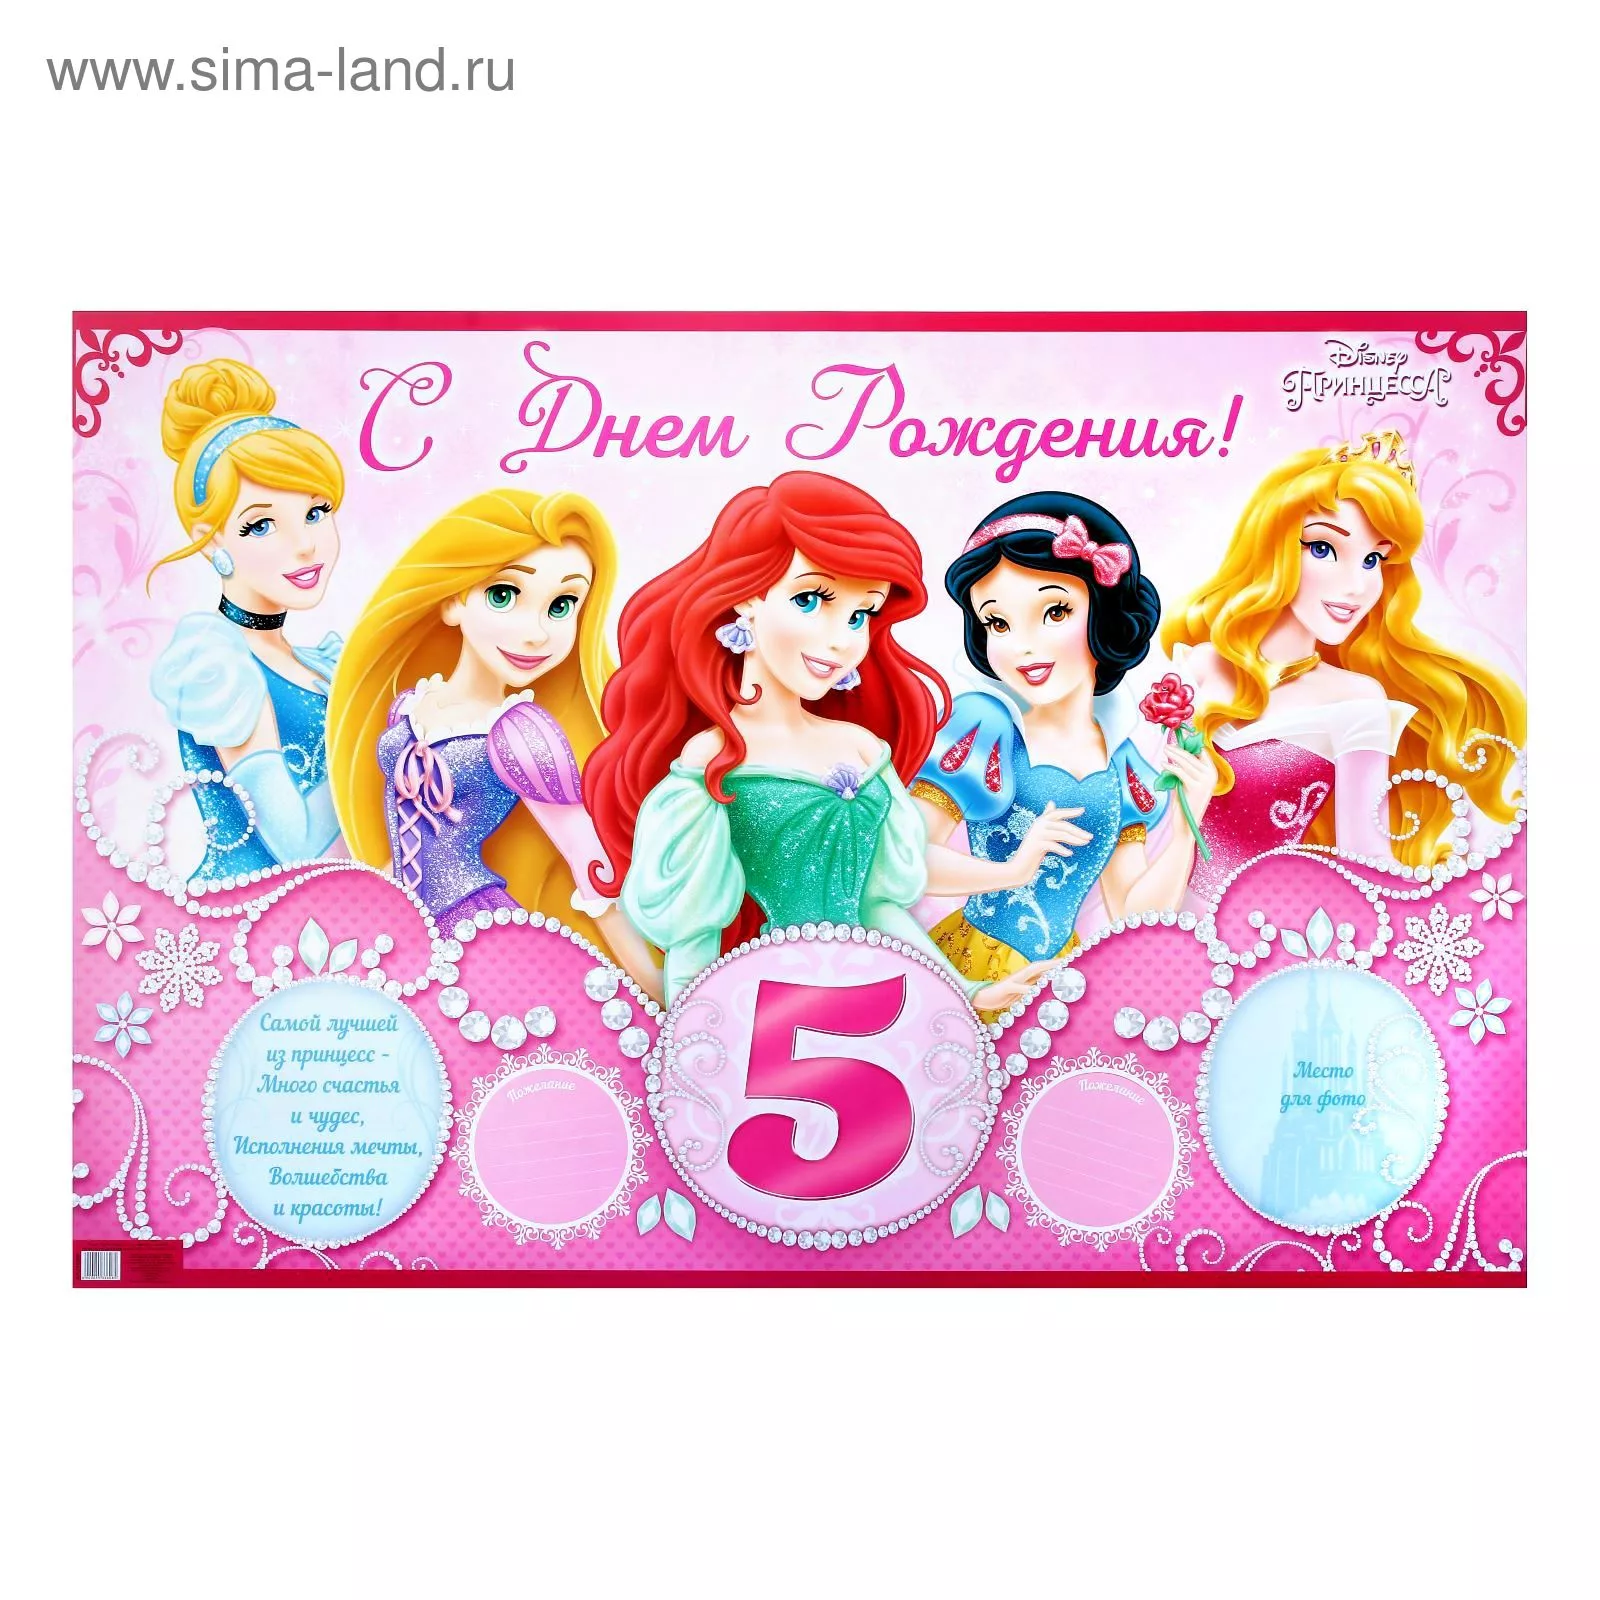 Дочери 5 лет поздравления родителям. С днём рождения 5 лет девочке. Плакат с днем рождения 5 лет. День рождения принцессы. С днем рождения принцесса 5 лет.